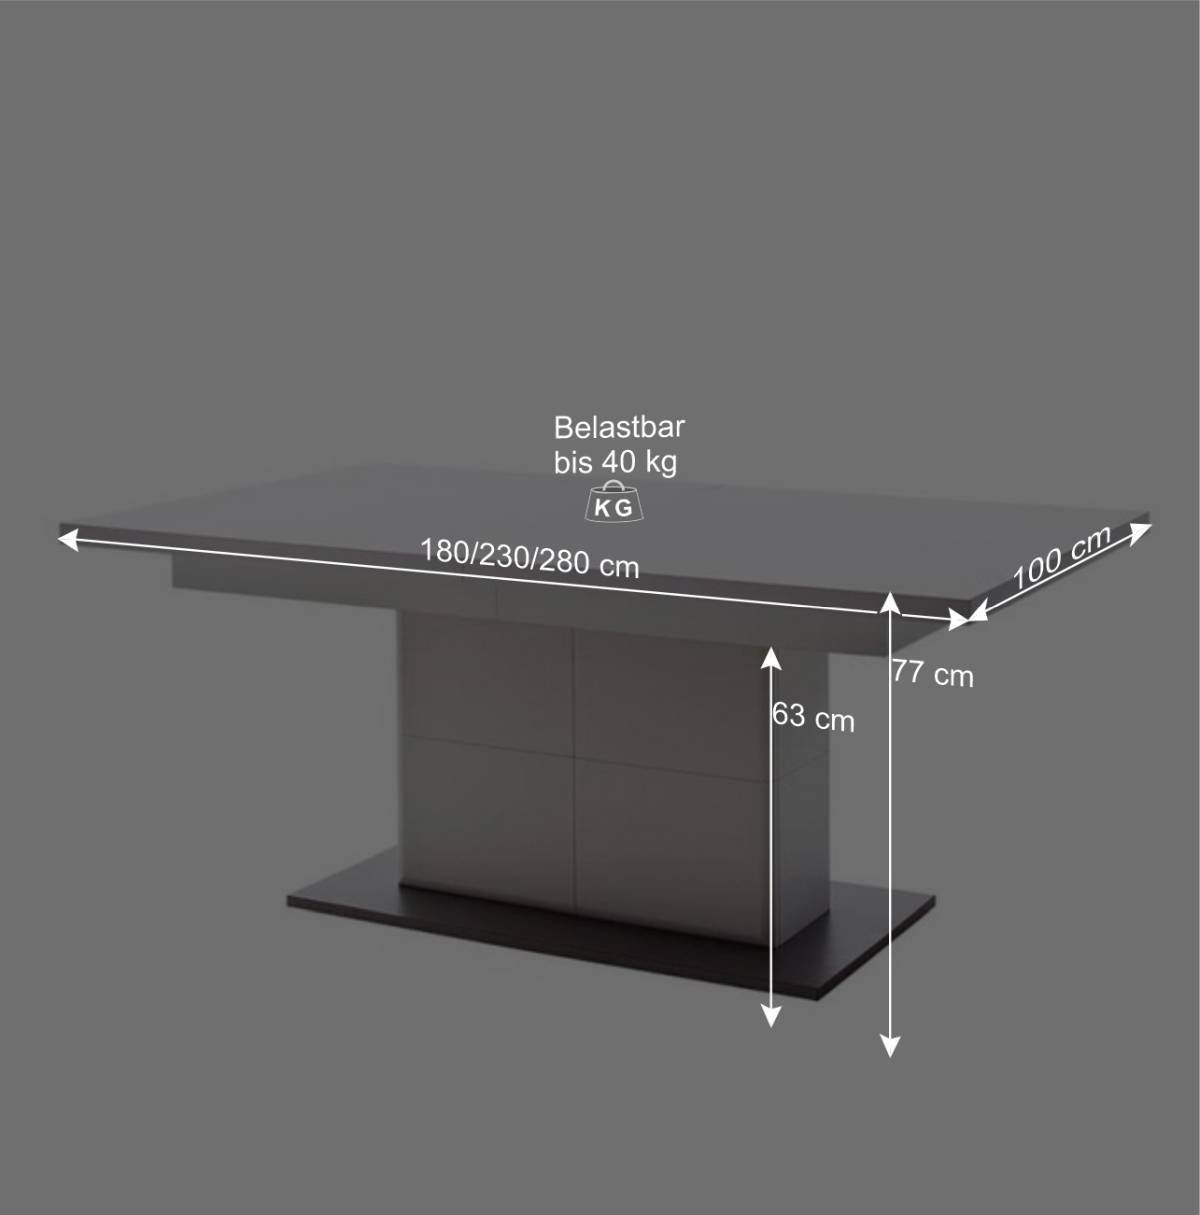 Verlängerbarer Säulentisch in Weiß & Grau - Hazime